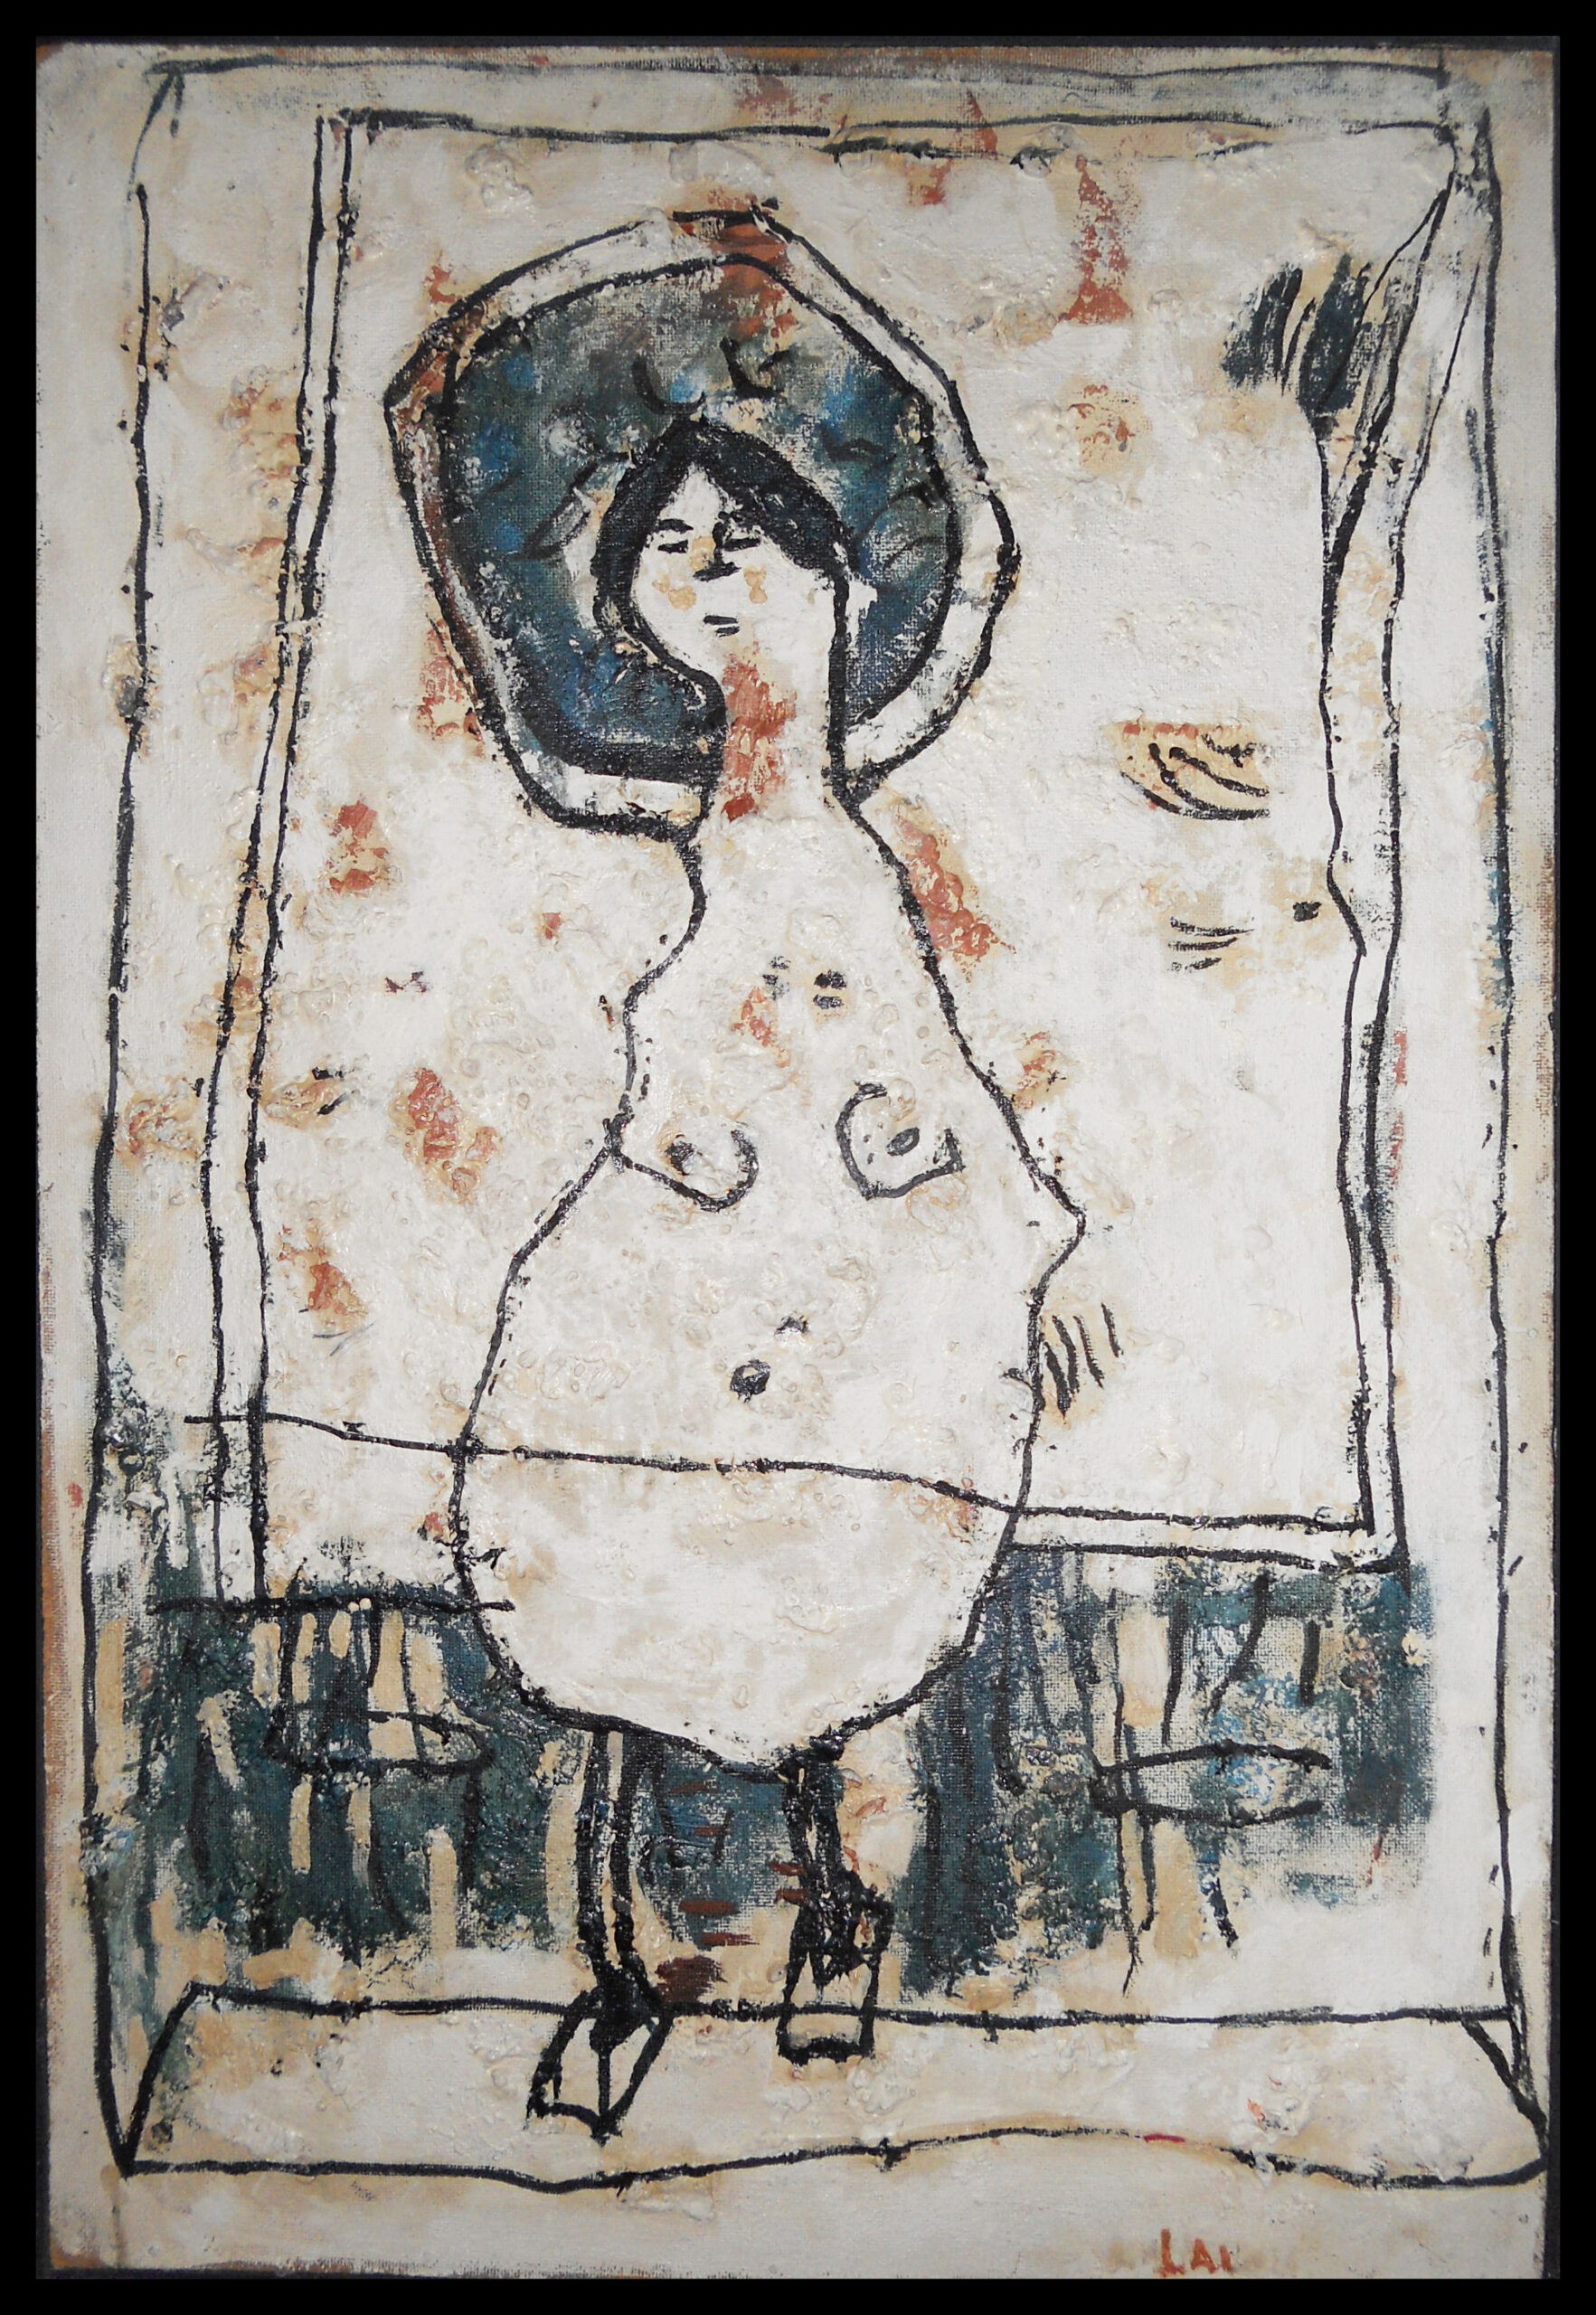 Zena ´70, Ulje na lesonitu, 63 x 93